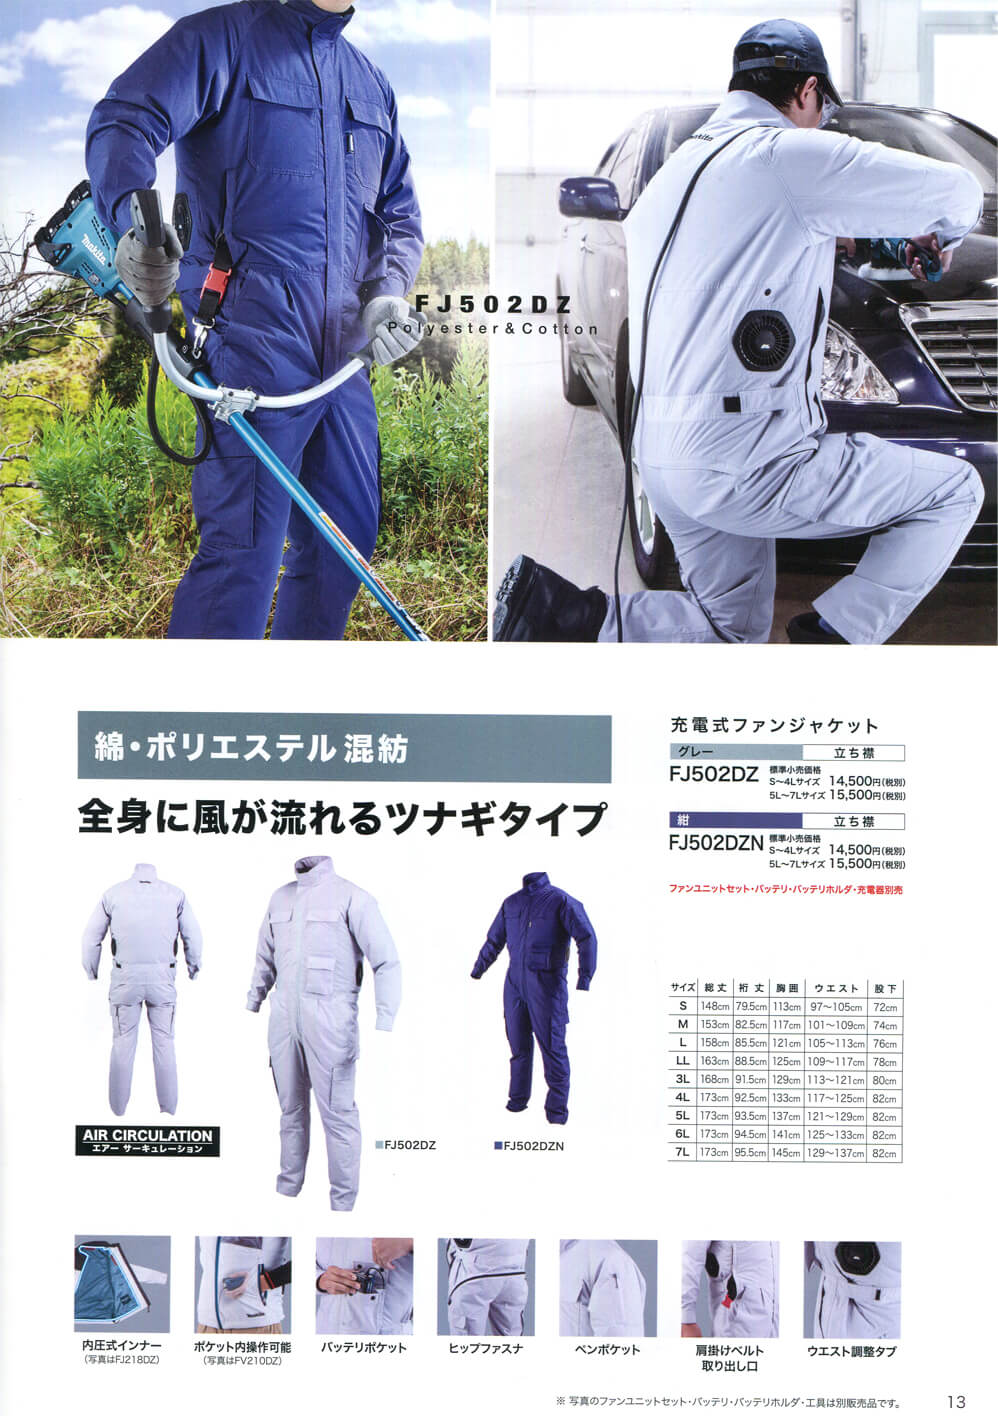 マキタ FJ502DZ 充電式ファンジャケット ツナギタイプ ウエダ金物【公式サイト】